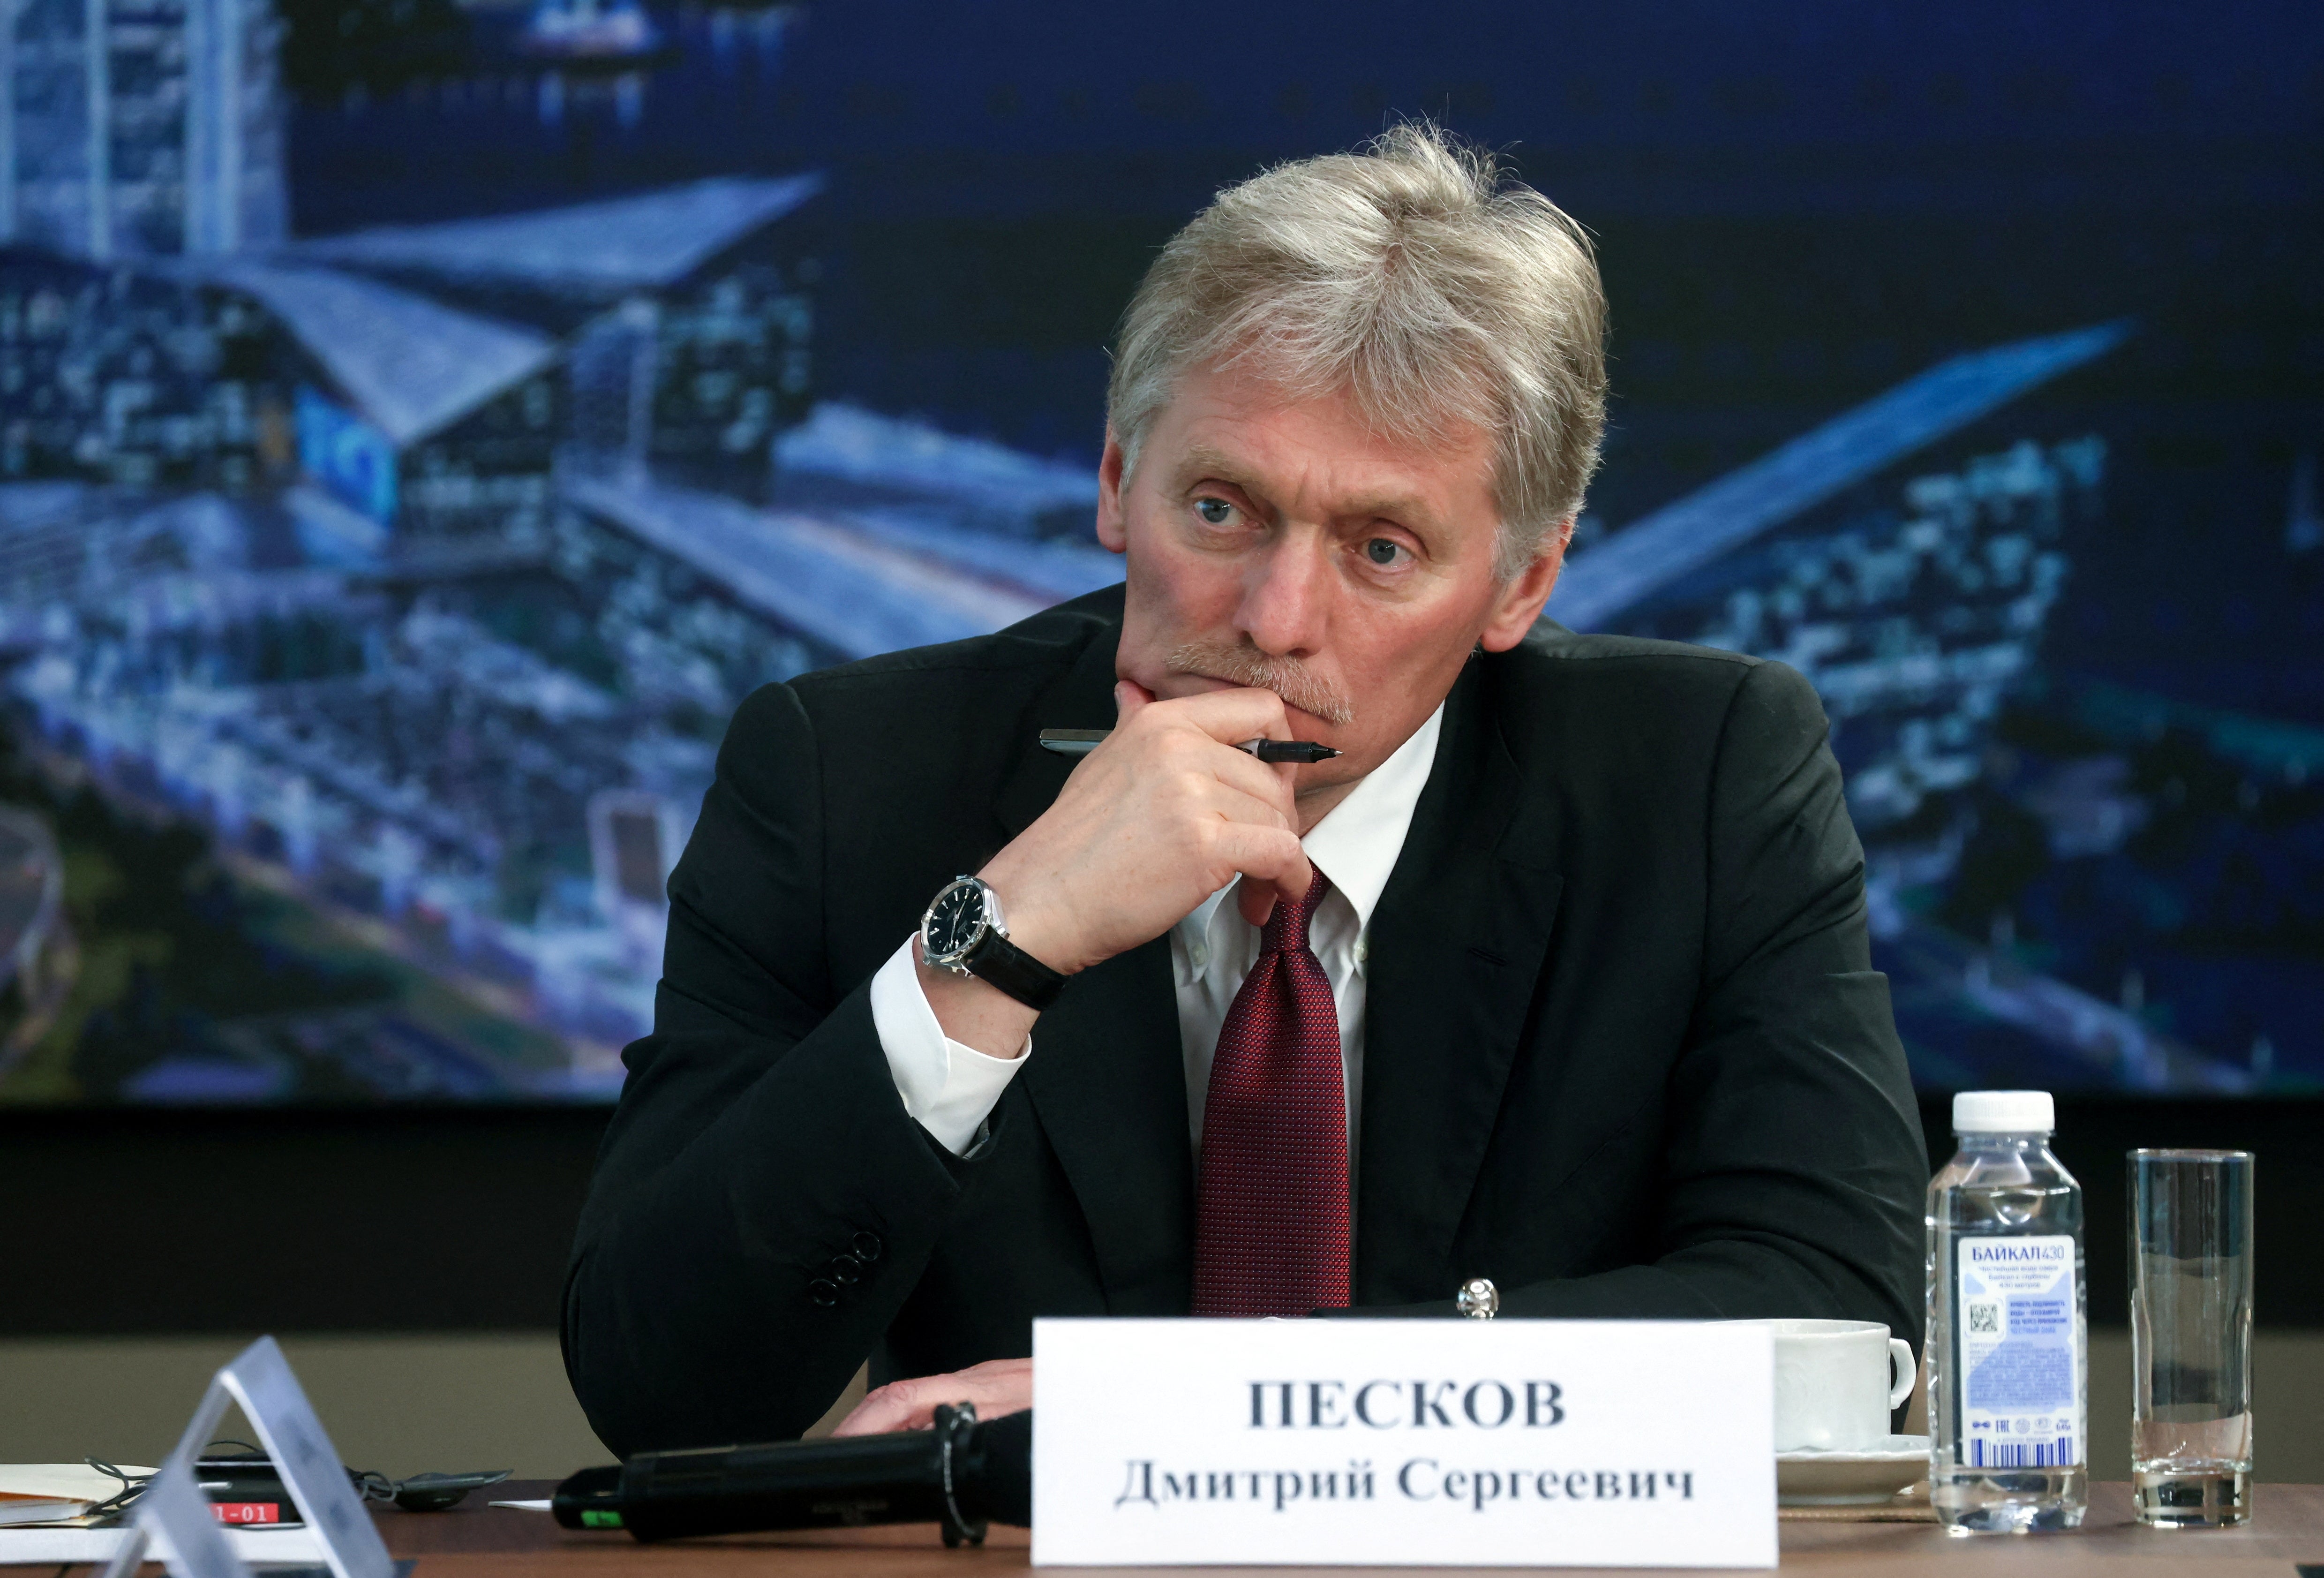 Kremlin-woordvoerder Dmitry Peskov sprak eerder dit jaar met verslaggevers